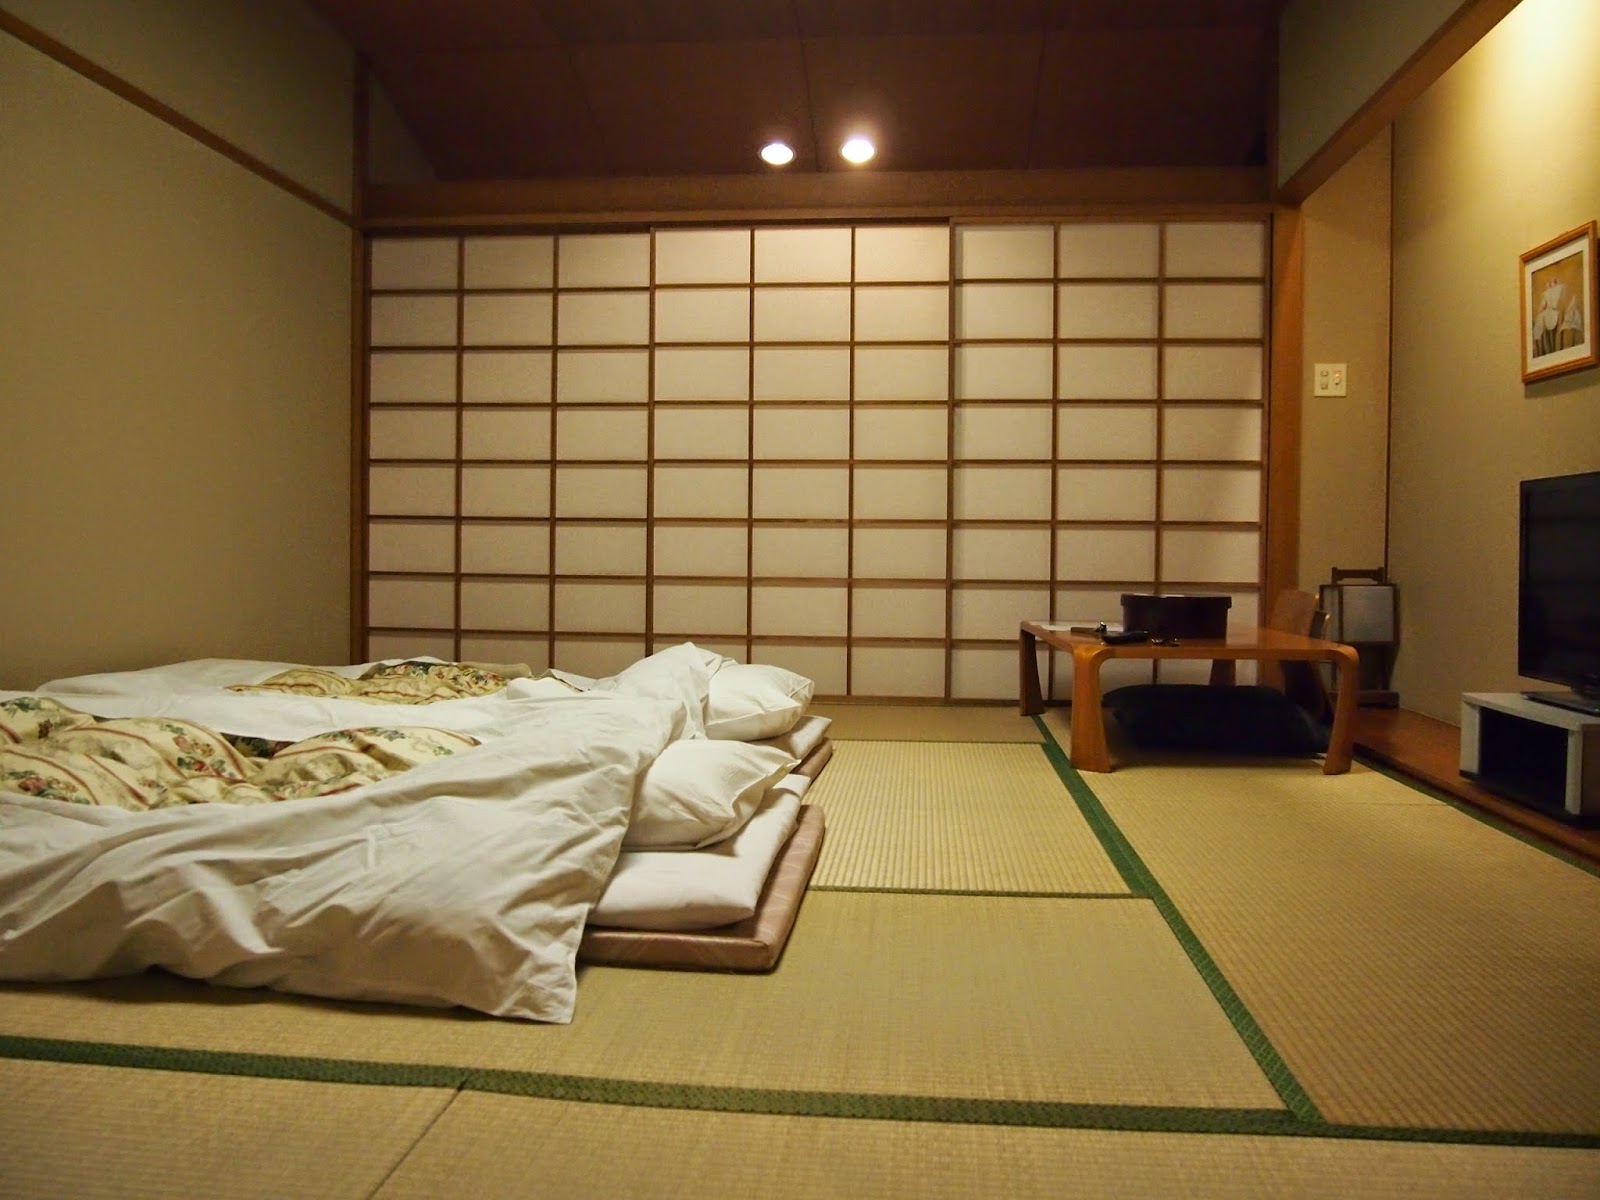 Ảnh nội thất phòng ngủ kiểu Nhật